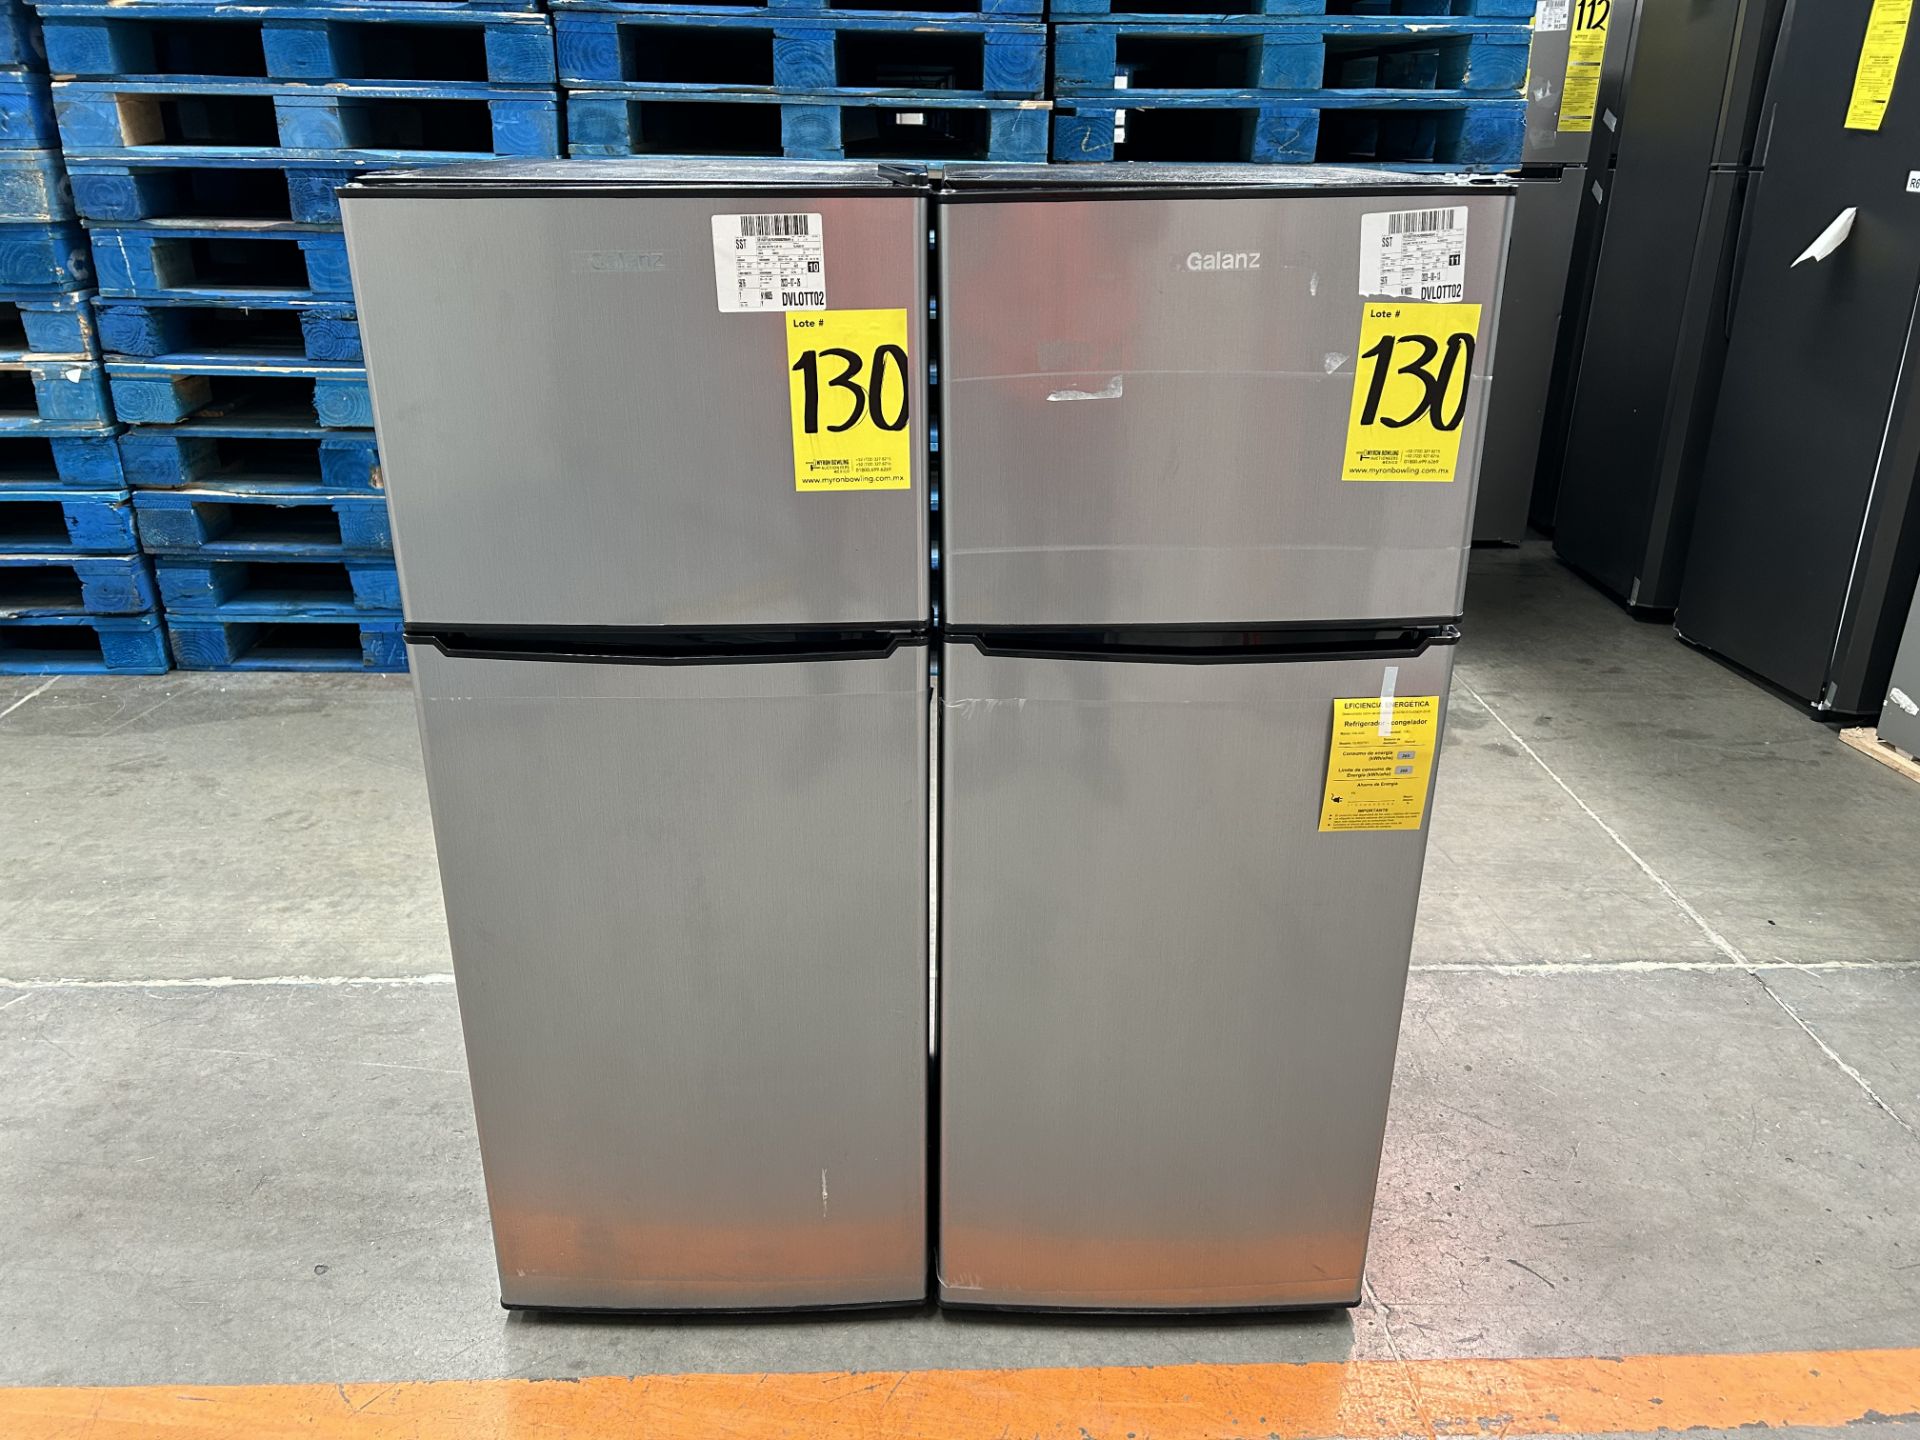 Lote de 2 refrigeradores contiene: 1 Refrigerador Marca GALANZ, Modelo GLR55TS1, Serie 06723, Color